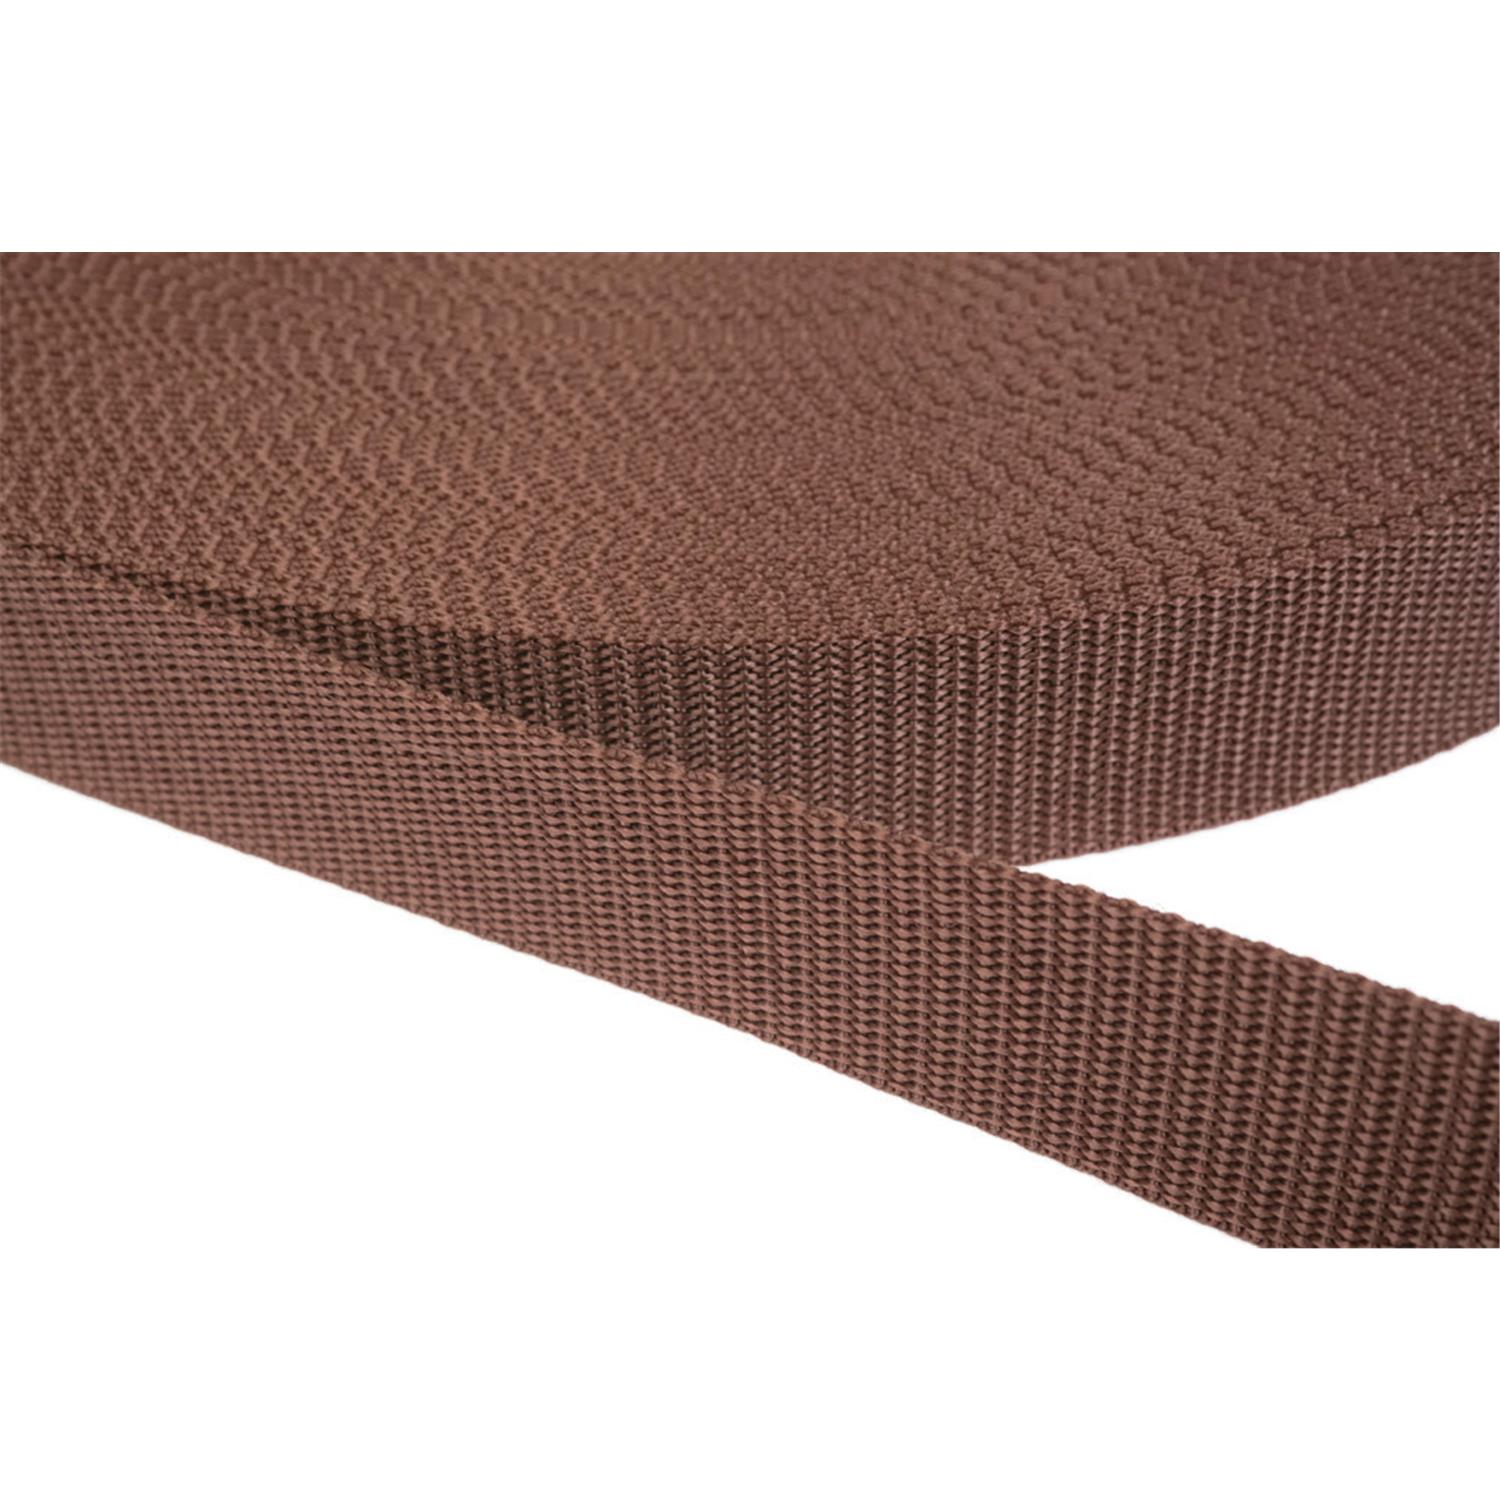 Gurtband 20mm breit aus Polypropylen in 41 Farben 07 - braun 12 Meter